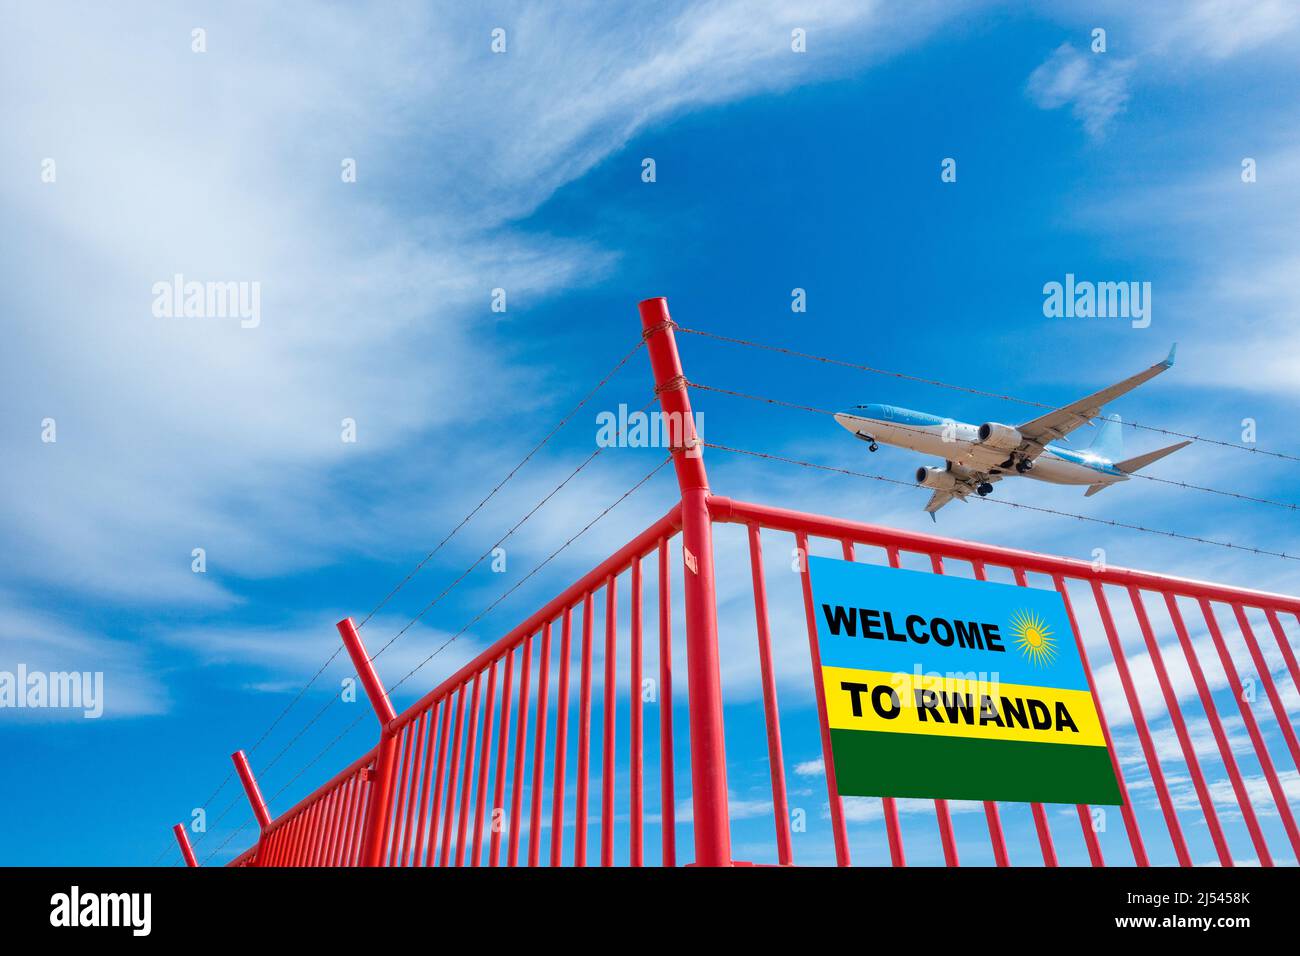 Avion volant au-dessus de la clôture de l'aéroport avec bienvenue au Rwanda sur le drapeau du Rwanda. UK offshore traitement de l'asile, la réinstallation, l'immigration... concept Banque D'Images